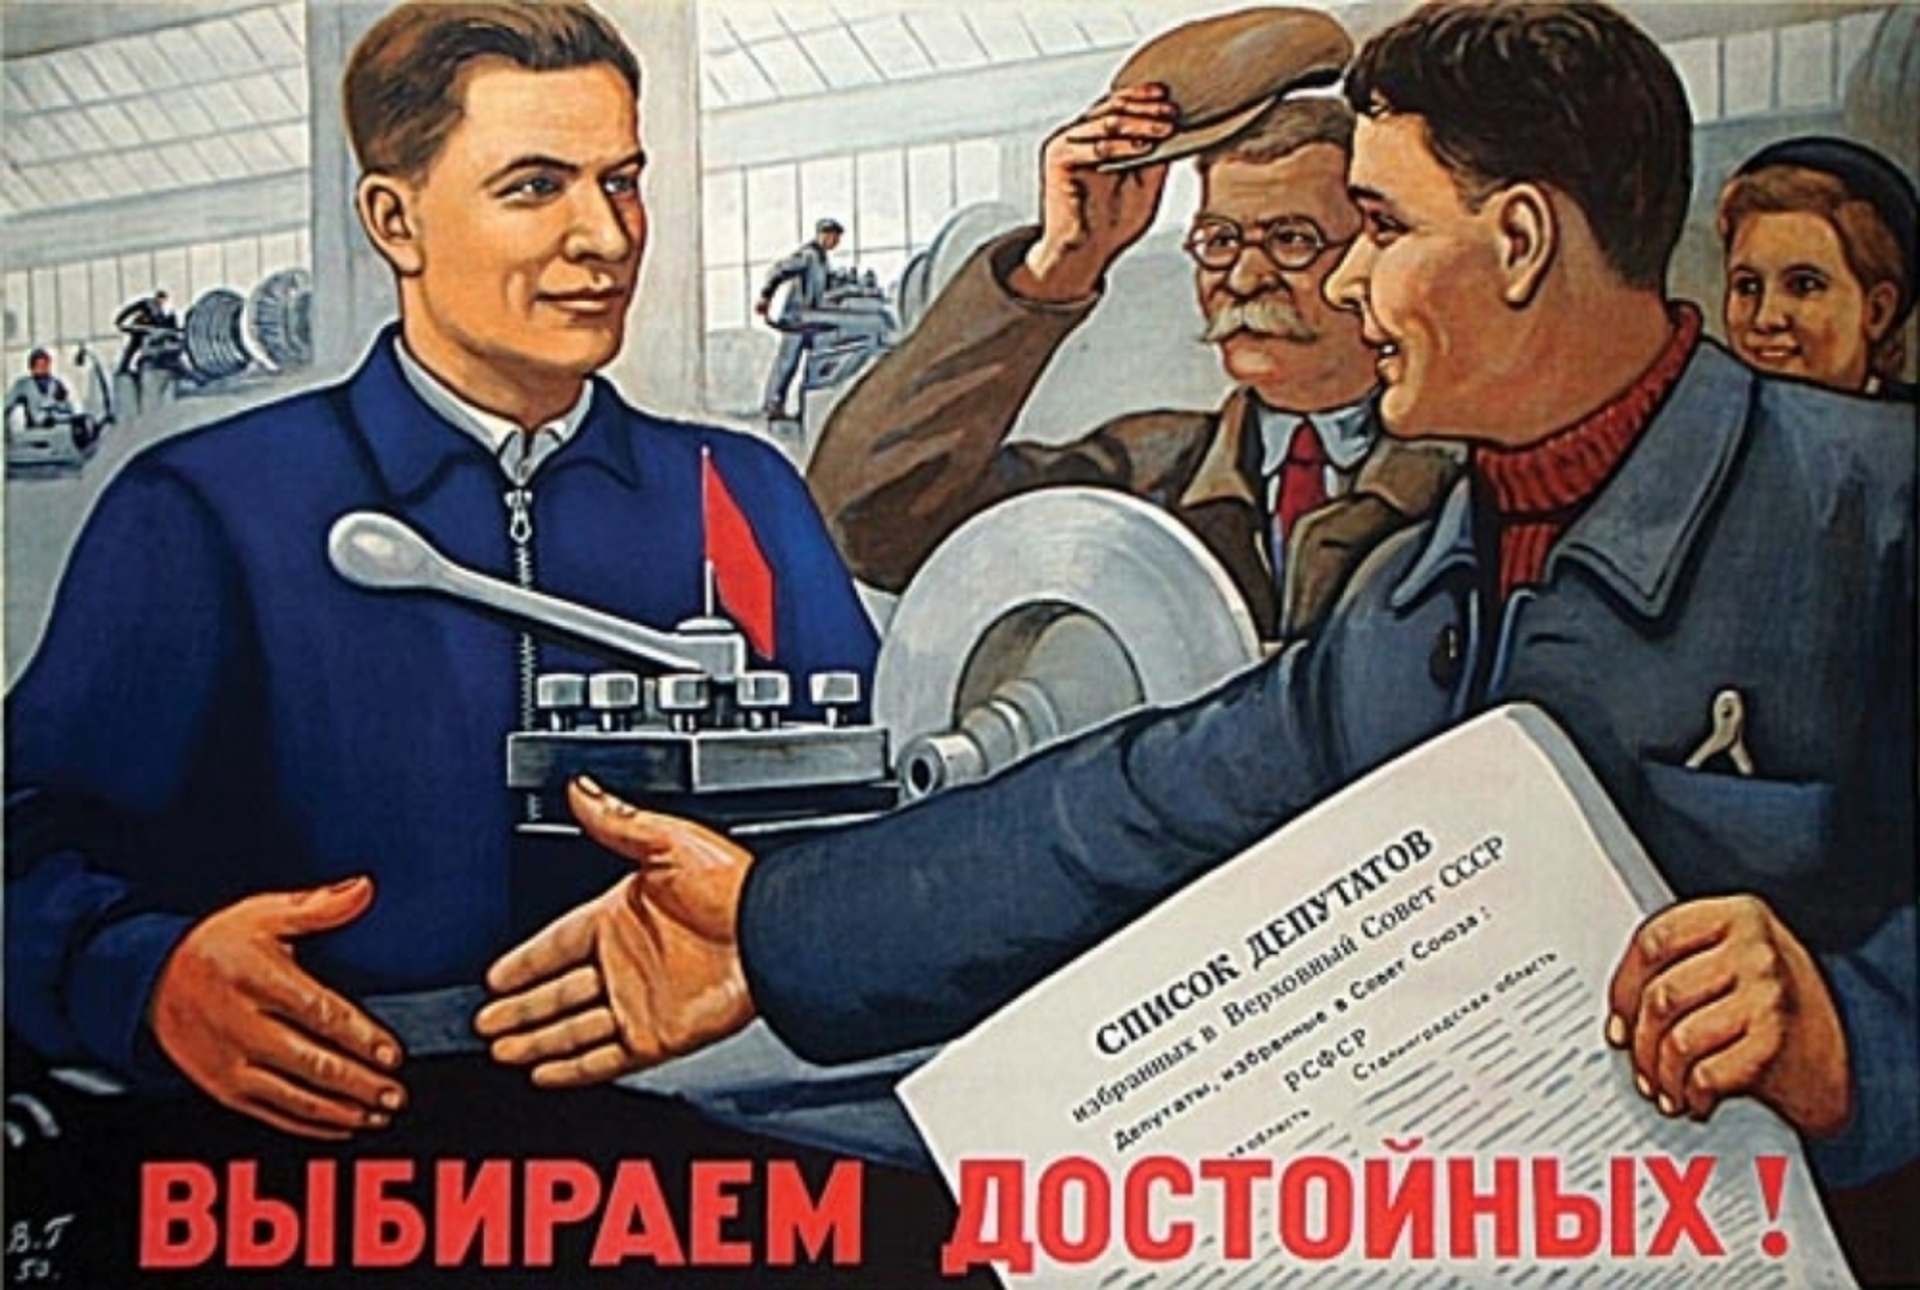 Слуцкий агитация. Советские плакаты. Плакат депутата. Советские предвыборные плакаты. Плакат выберем достойных.